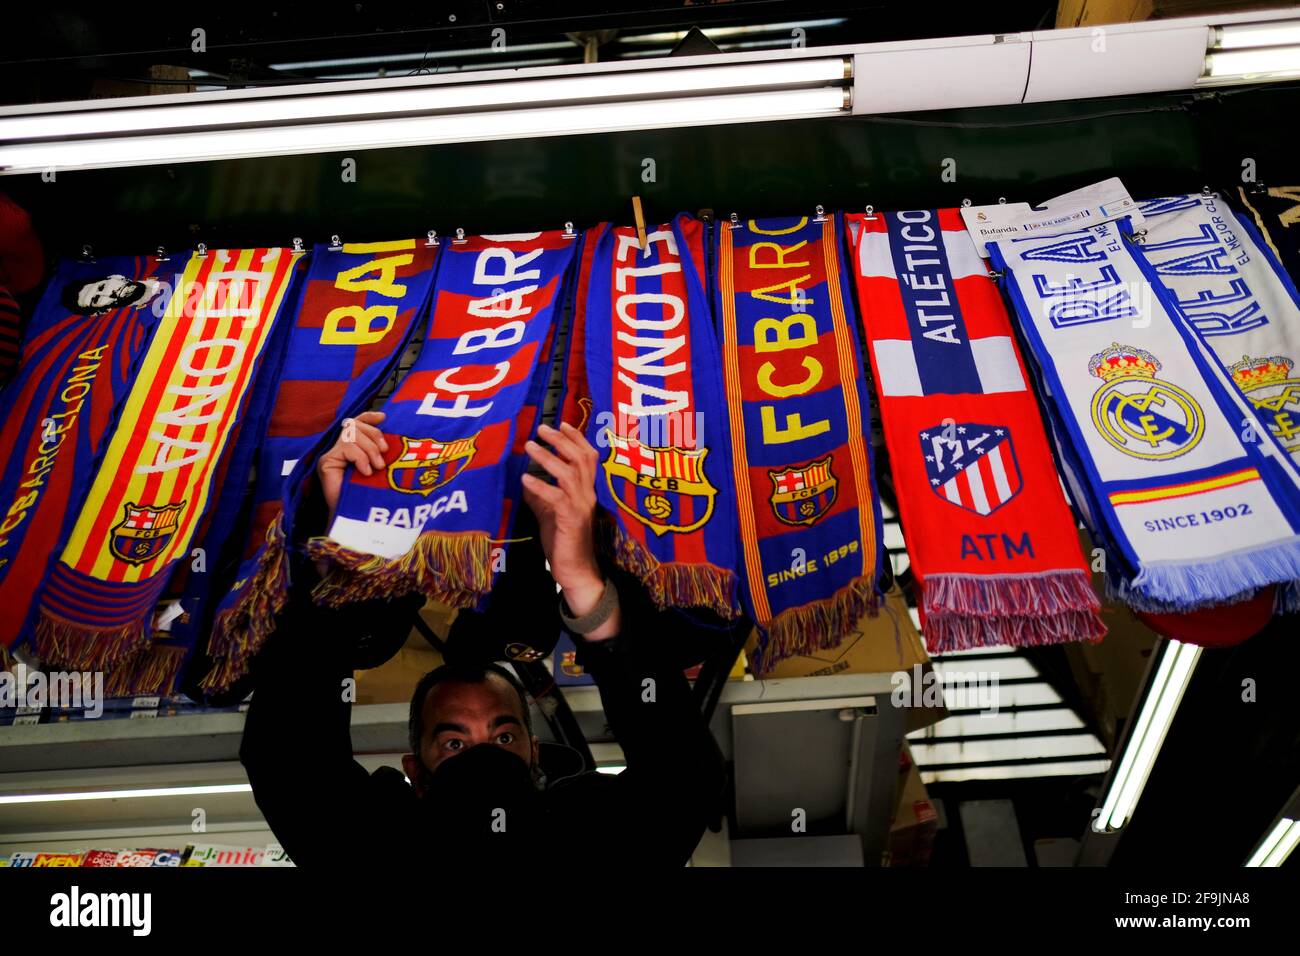 Fútbol Fútbol - FC Barcelona, Atlético Madrid y el Real Madrid bufandas se exhiben dentro de una tienda en Las Ramblas, ya que doce de los mejores clubes de fútbol europeos